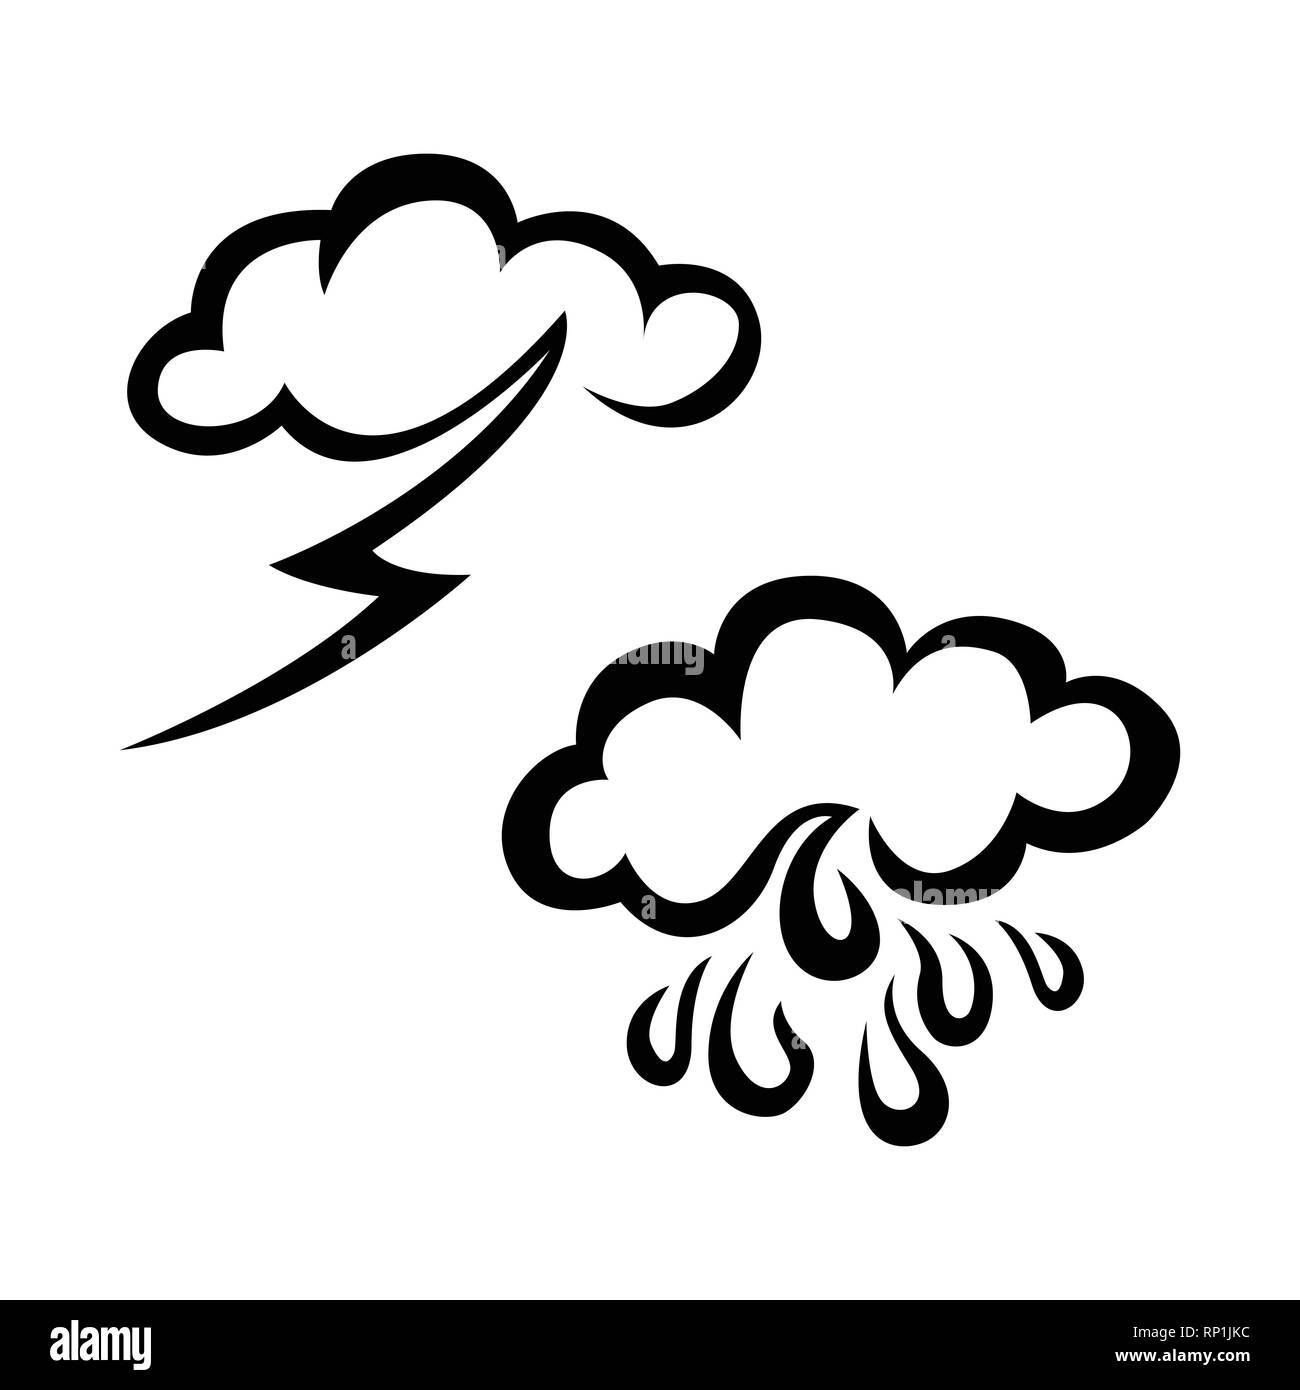 Icône météo Banque d'images noir et blanc - Alamy